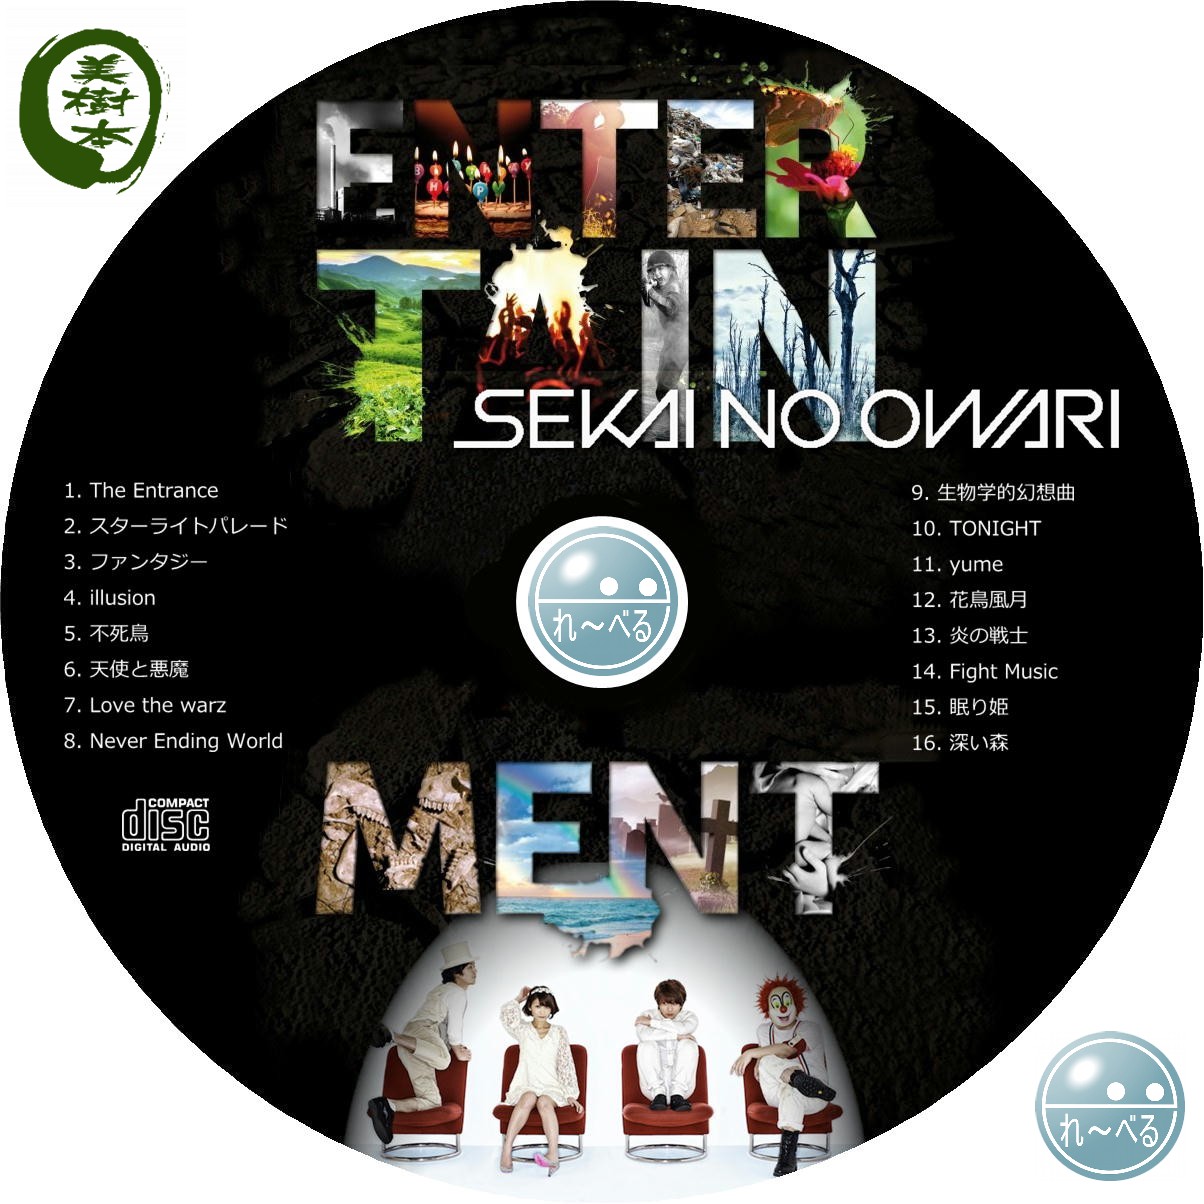 Sekai no owari albüm indir.